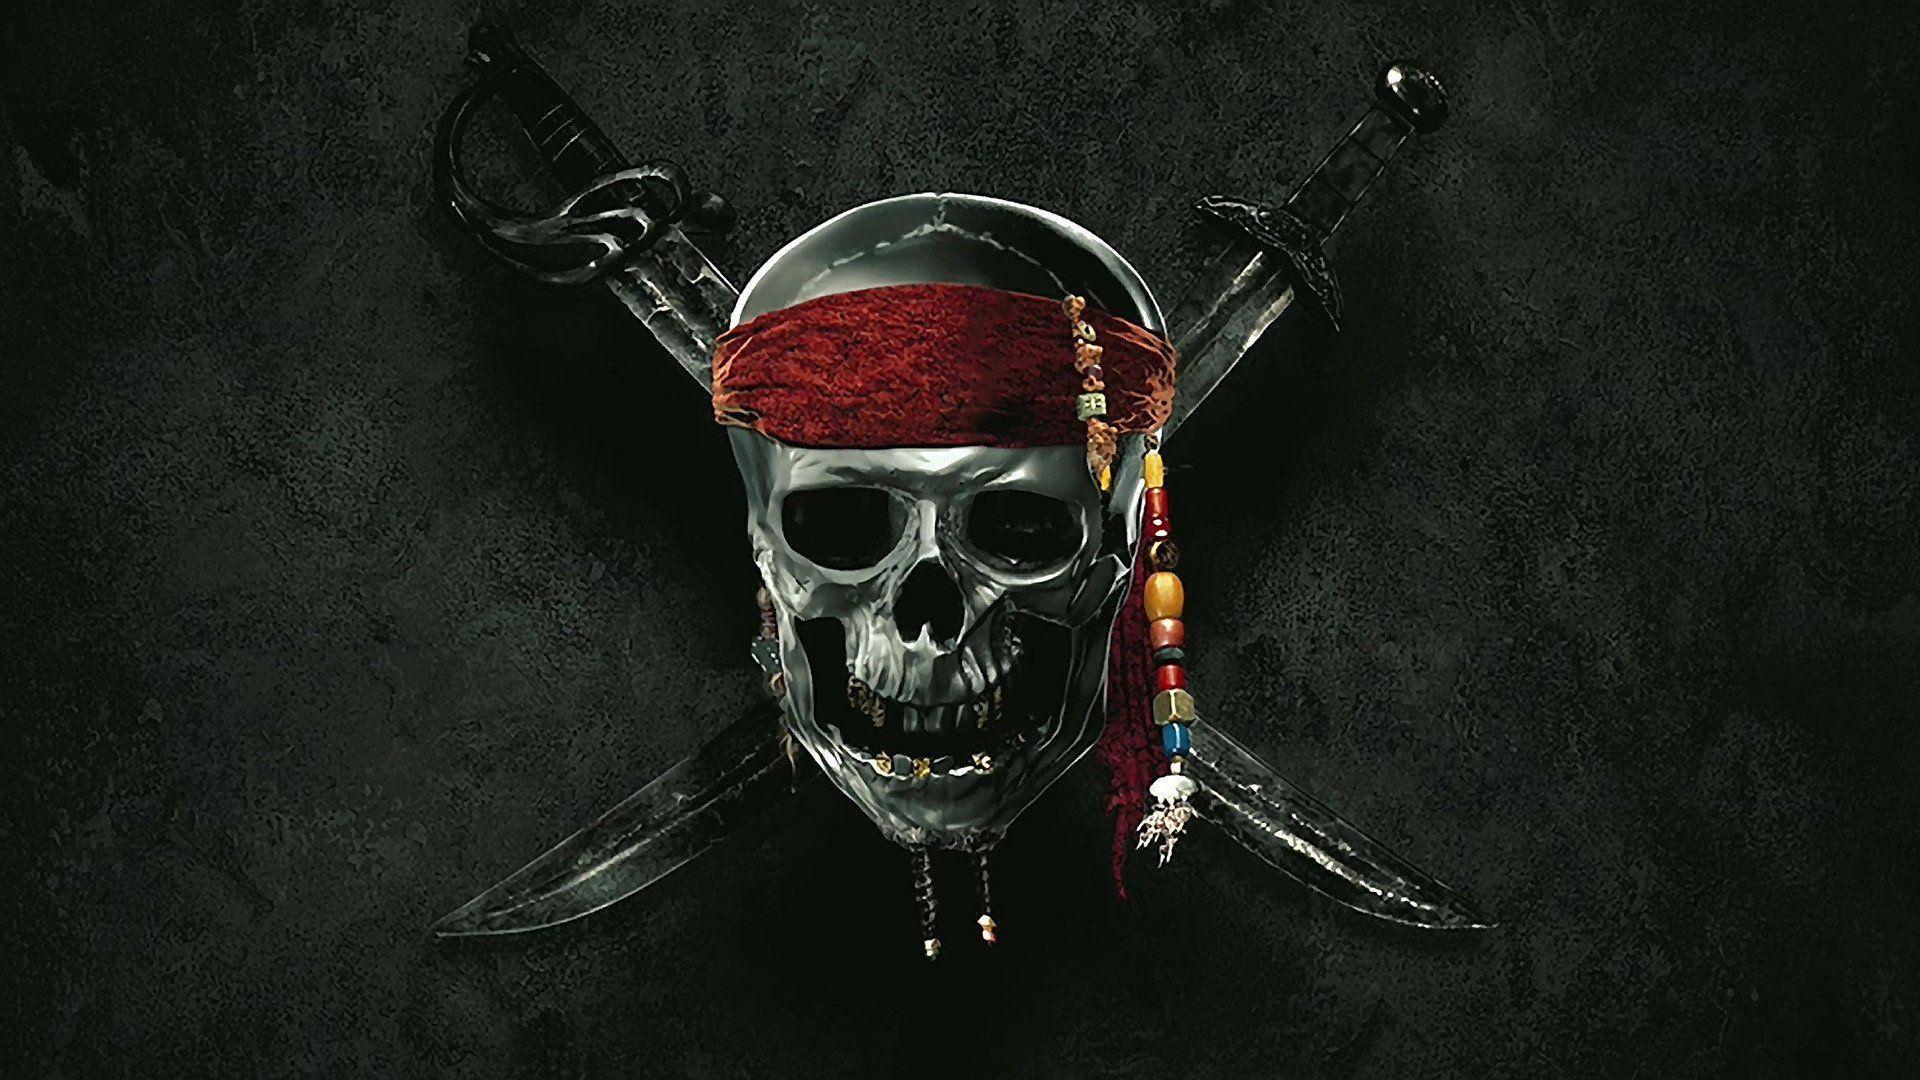 Fondos de Piratas del Caribe